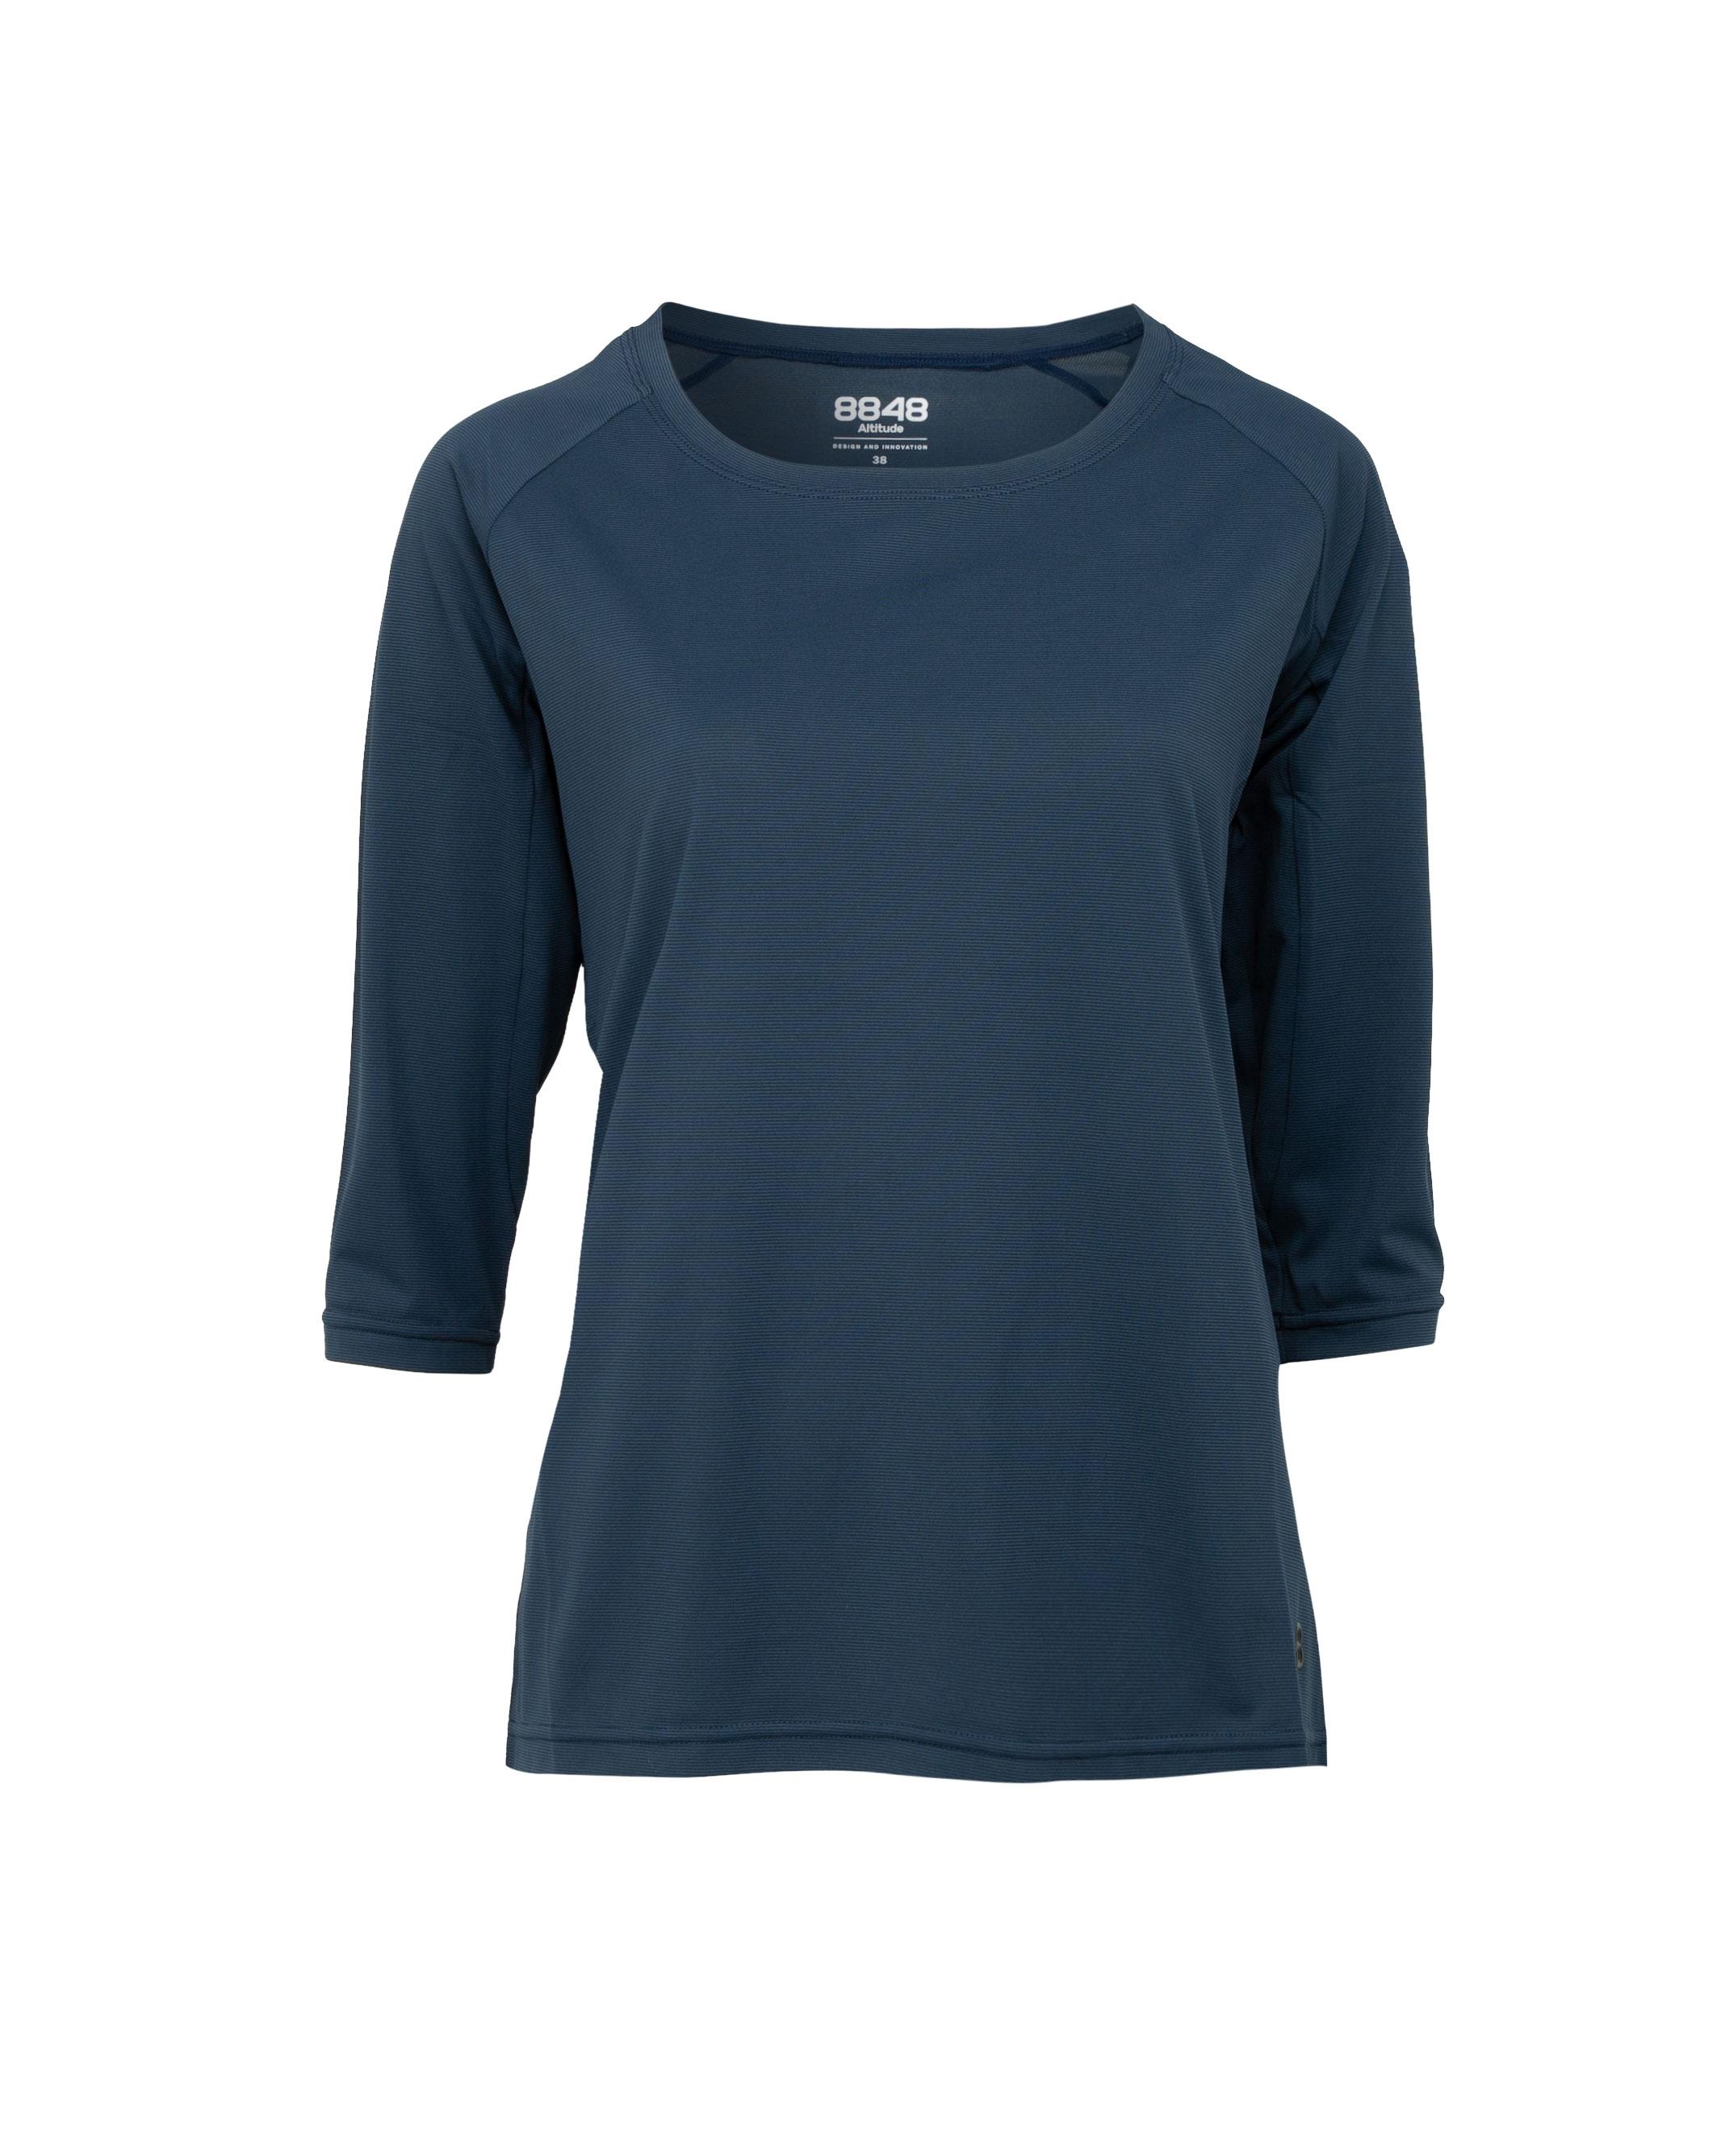 Dandilon W Tee Navy - Navy blue long sleeve T-shirt women